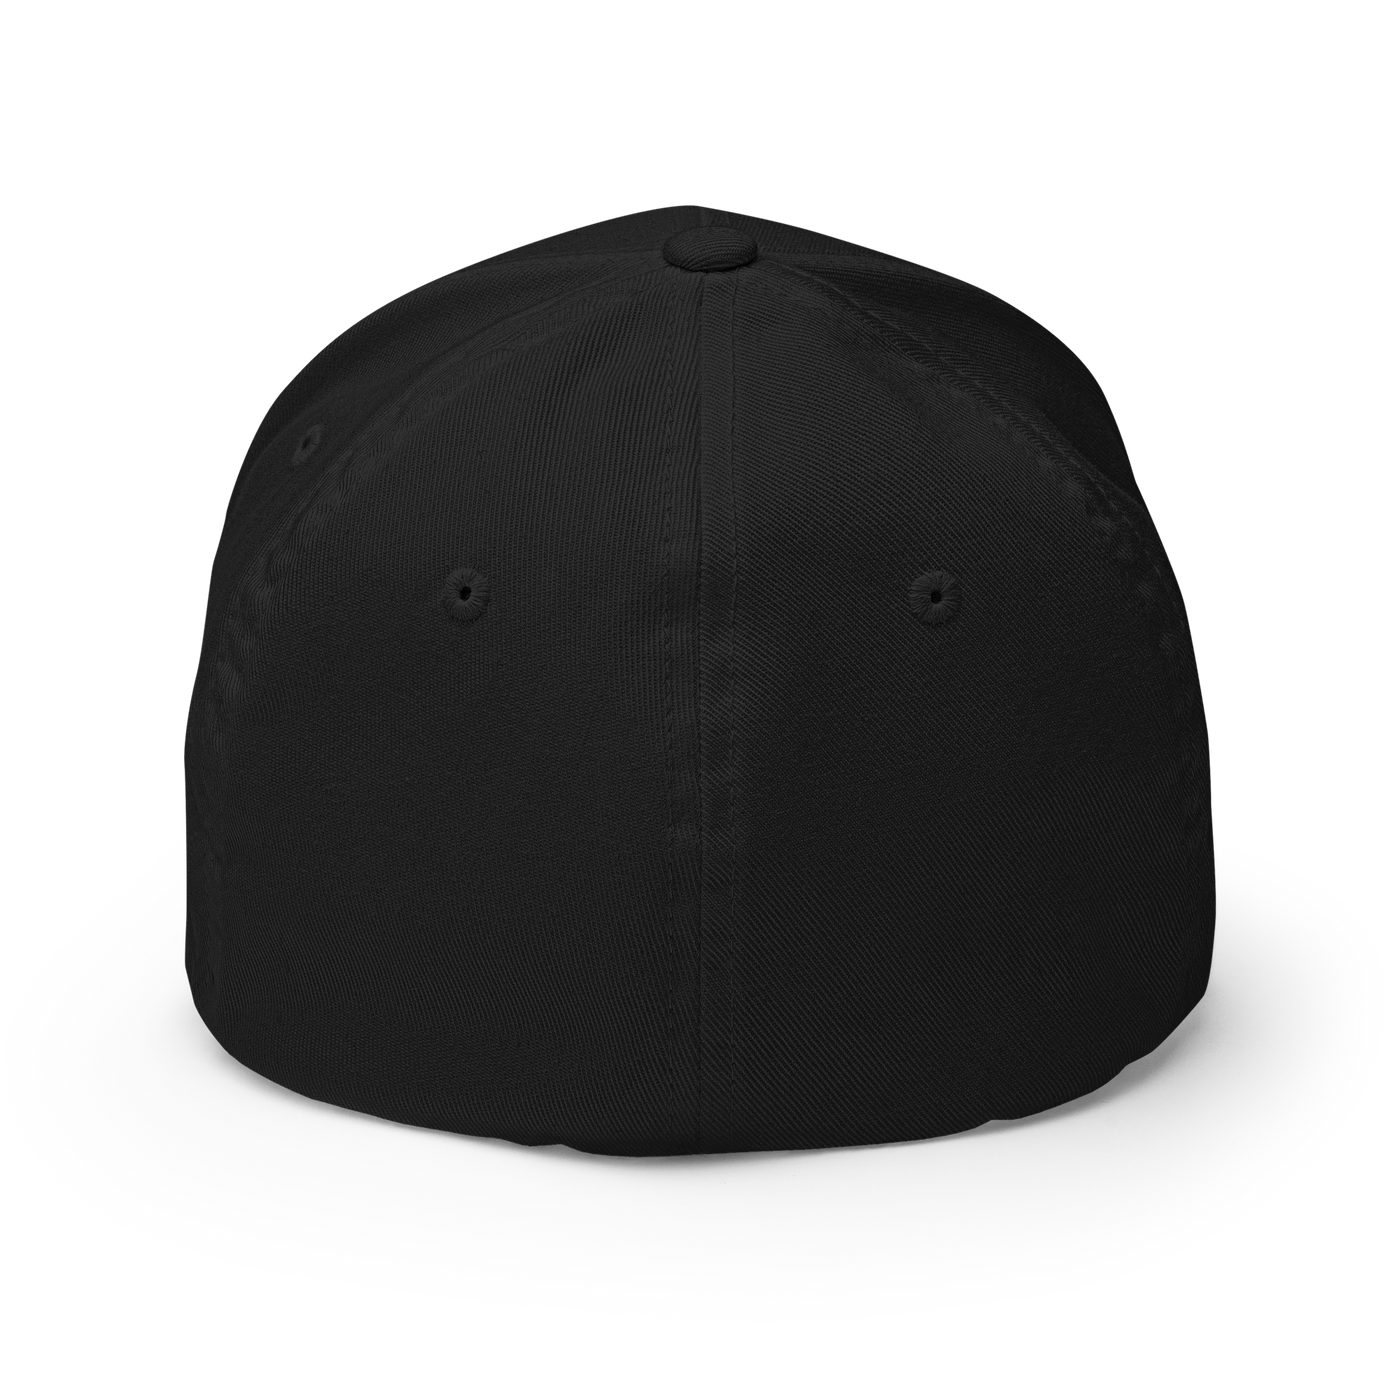 Hangman Flexfit Cap - Dark Navy - S/M - Just Another Cap Store